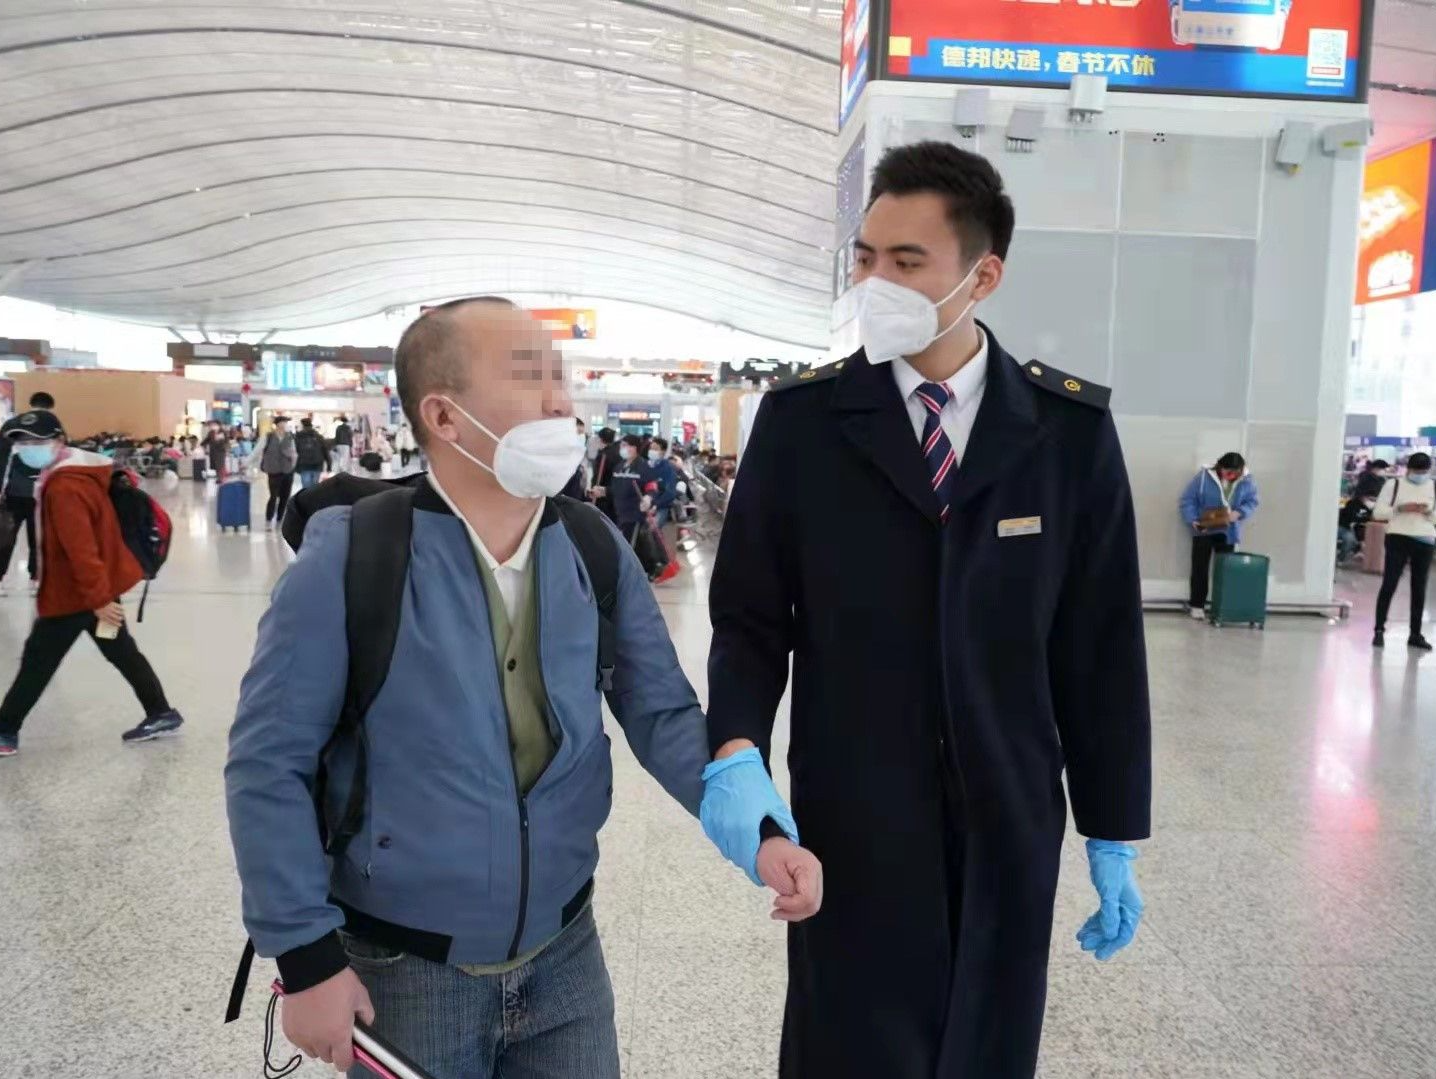 深圳火车站连续6年推出盲人旅客订票服务，累计服务旅客1300多人次